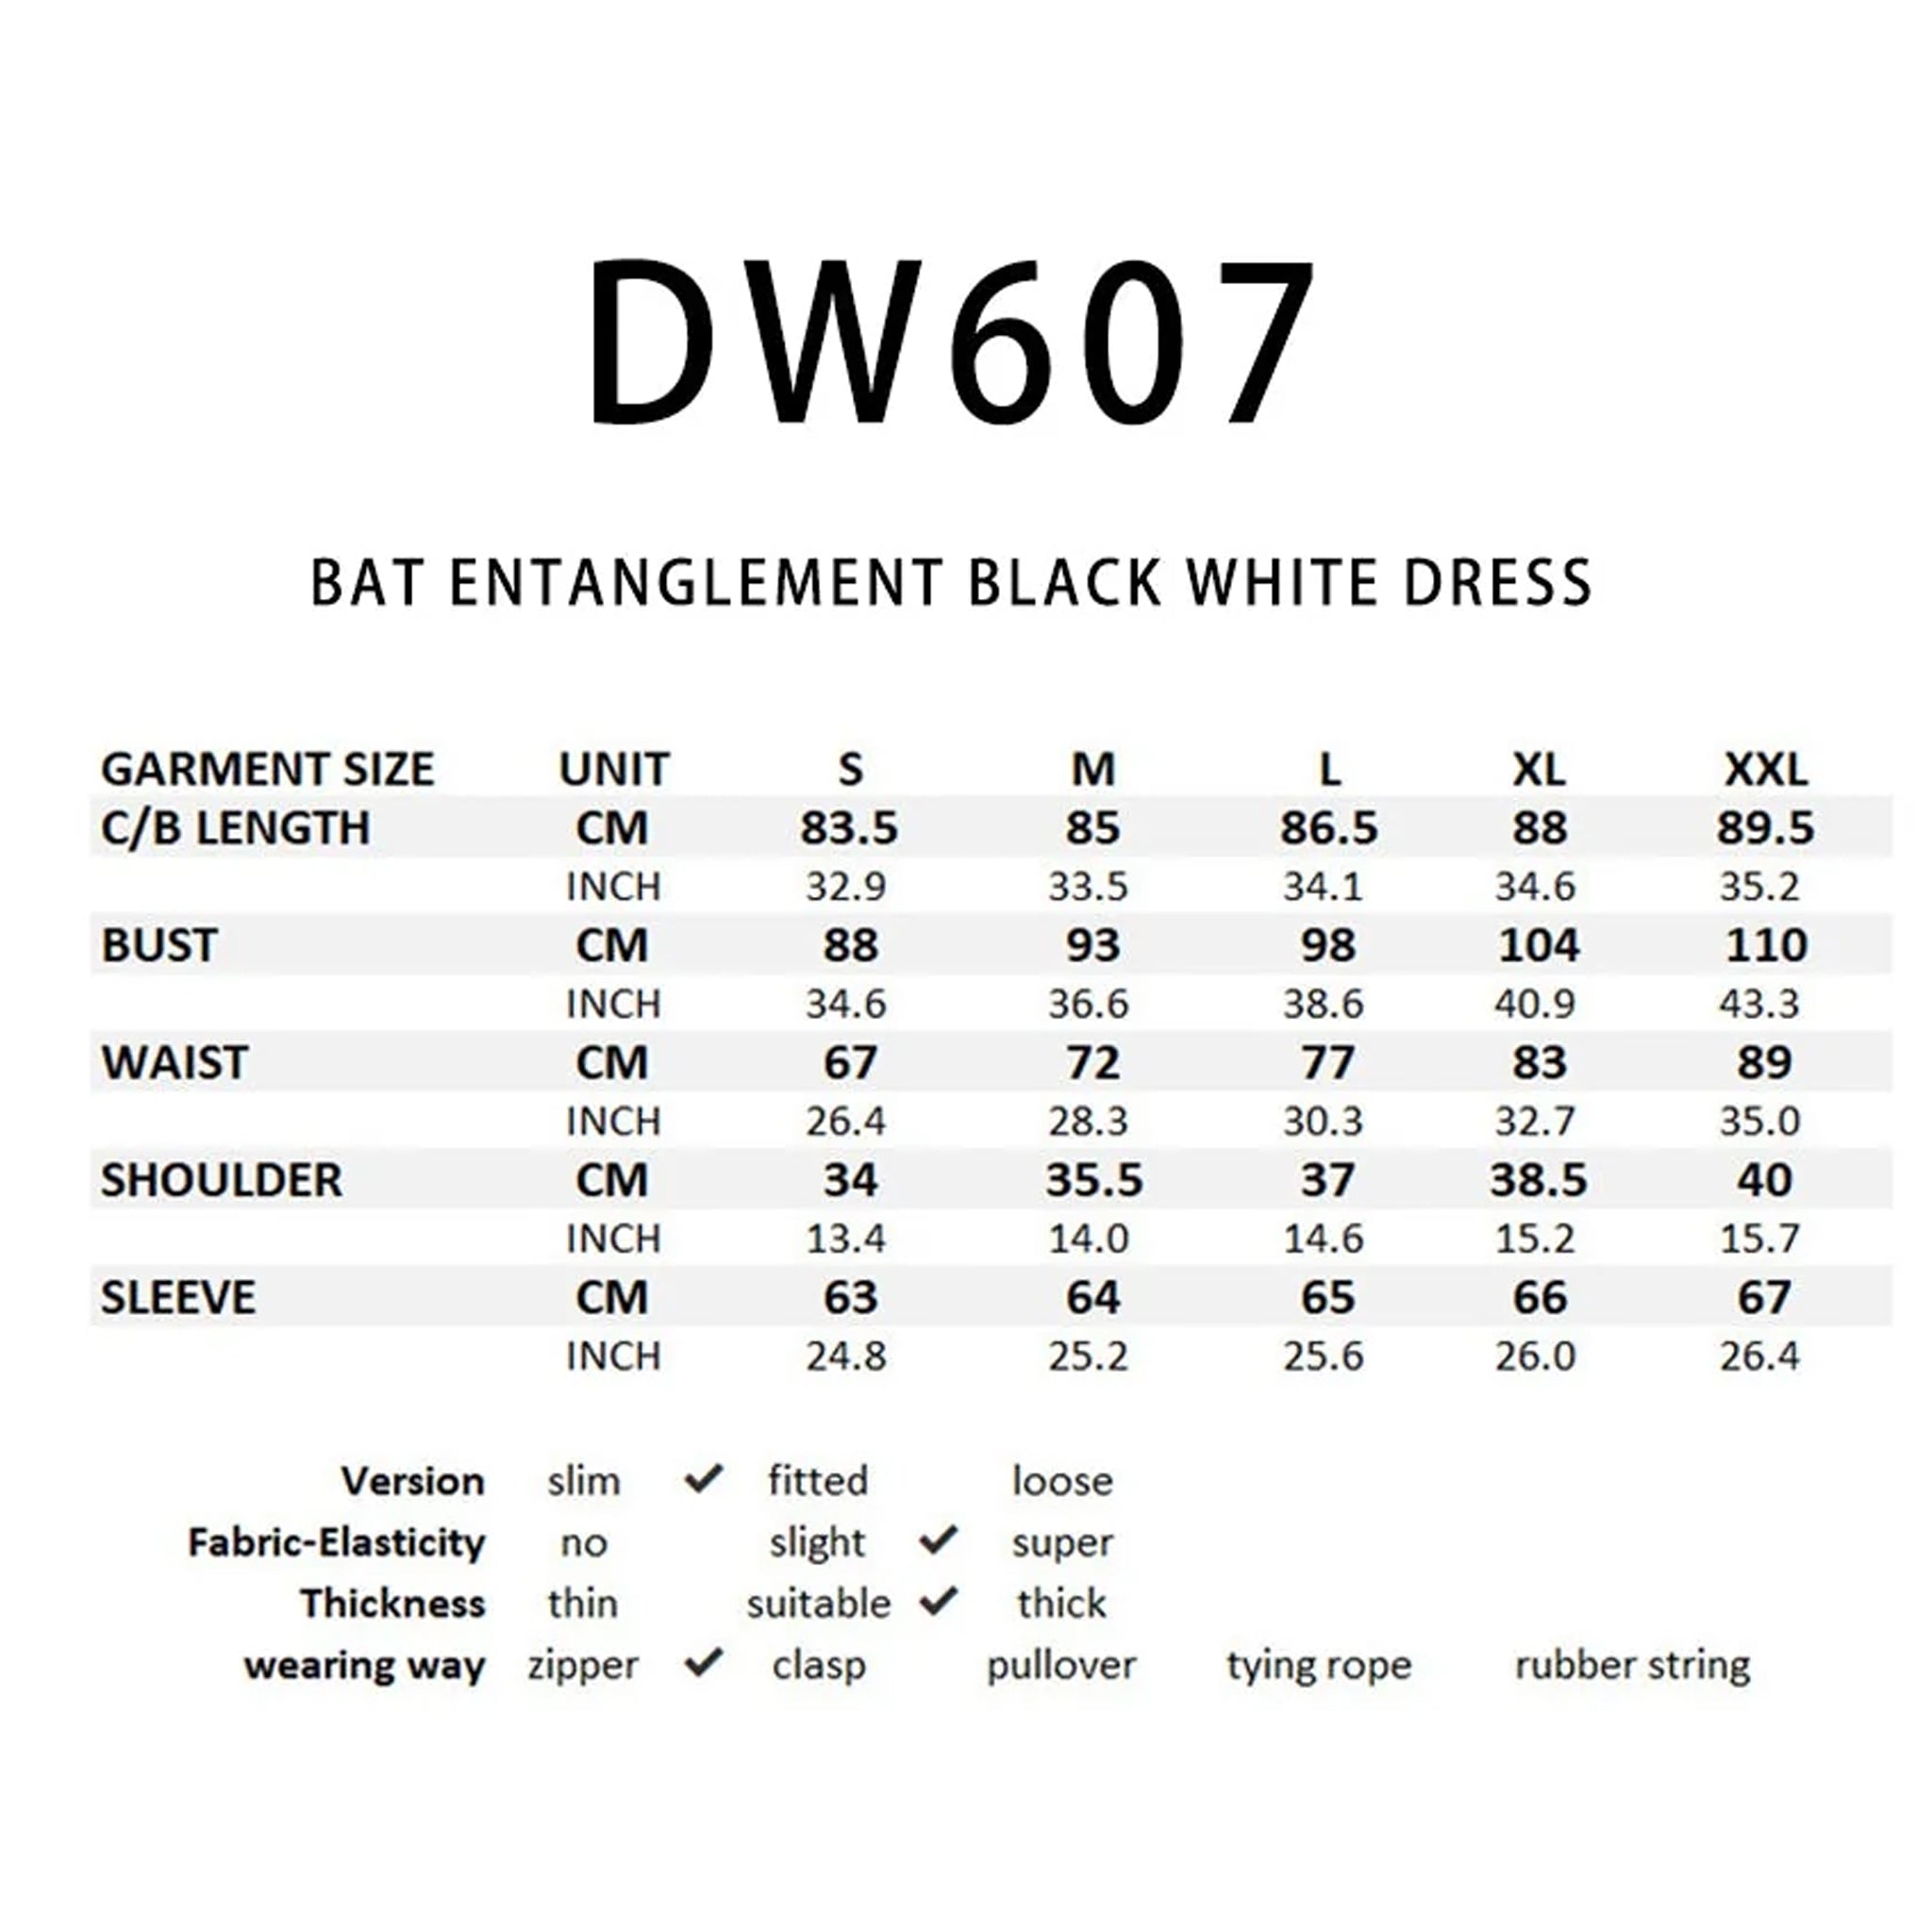 Bat Entanglement dress